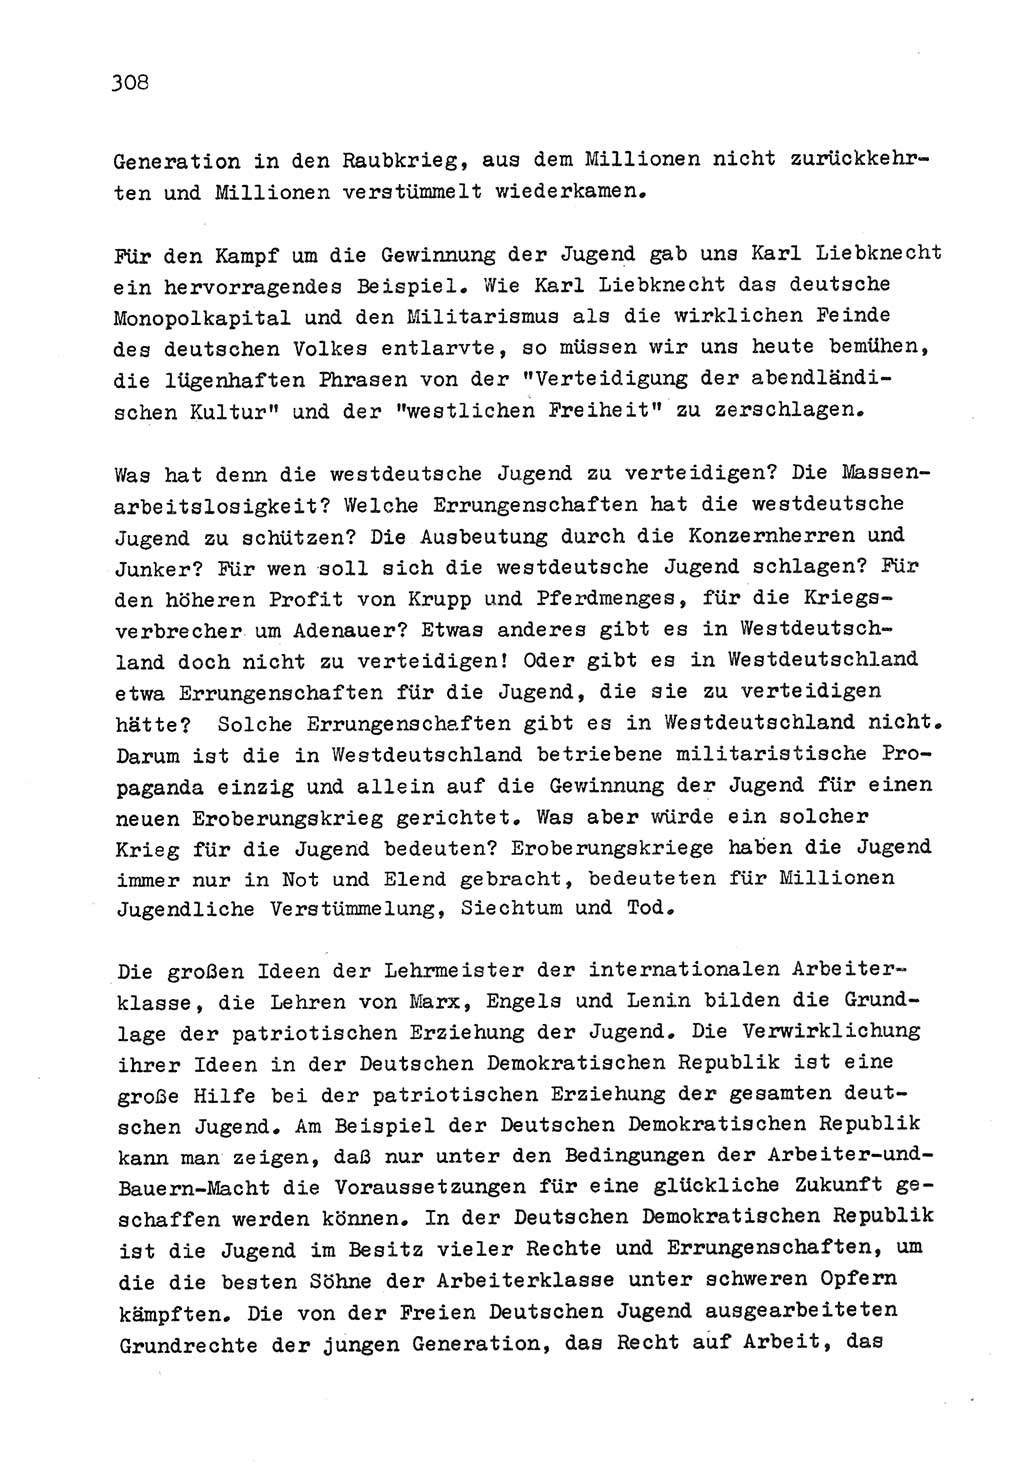 Zu Fragen der Parteiarbeit [Sozialistische Einheitspartei Deutschlands (SED) Deutsche Demokratische Republik (DDR)] 1979, Seite 308 (Fr. PA SED DDR 1979, S. 308)